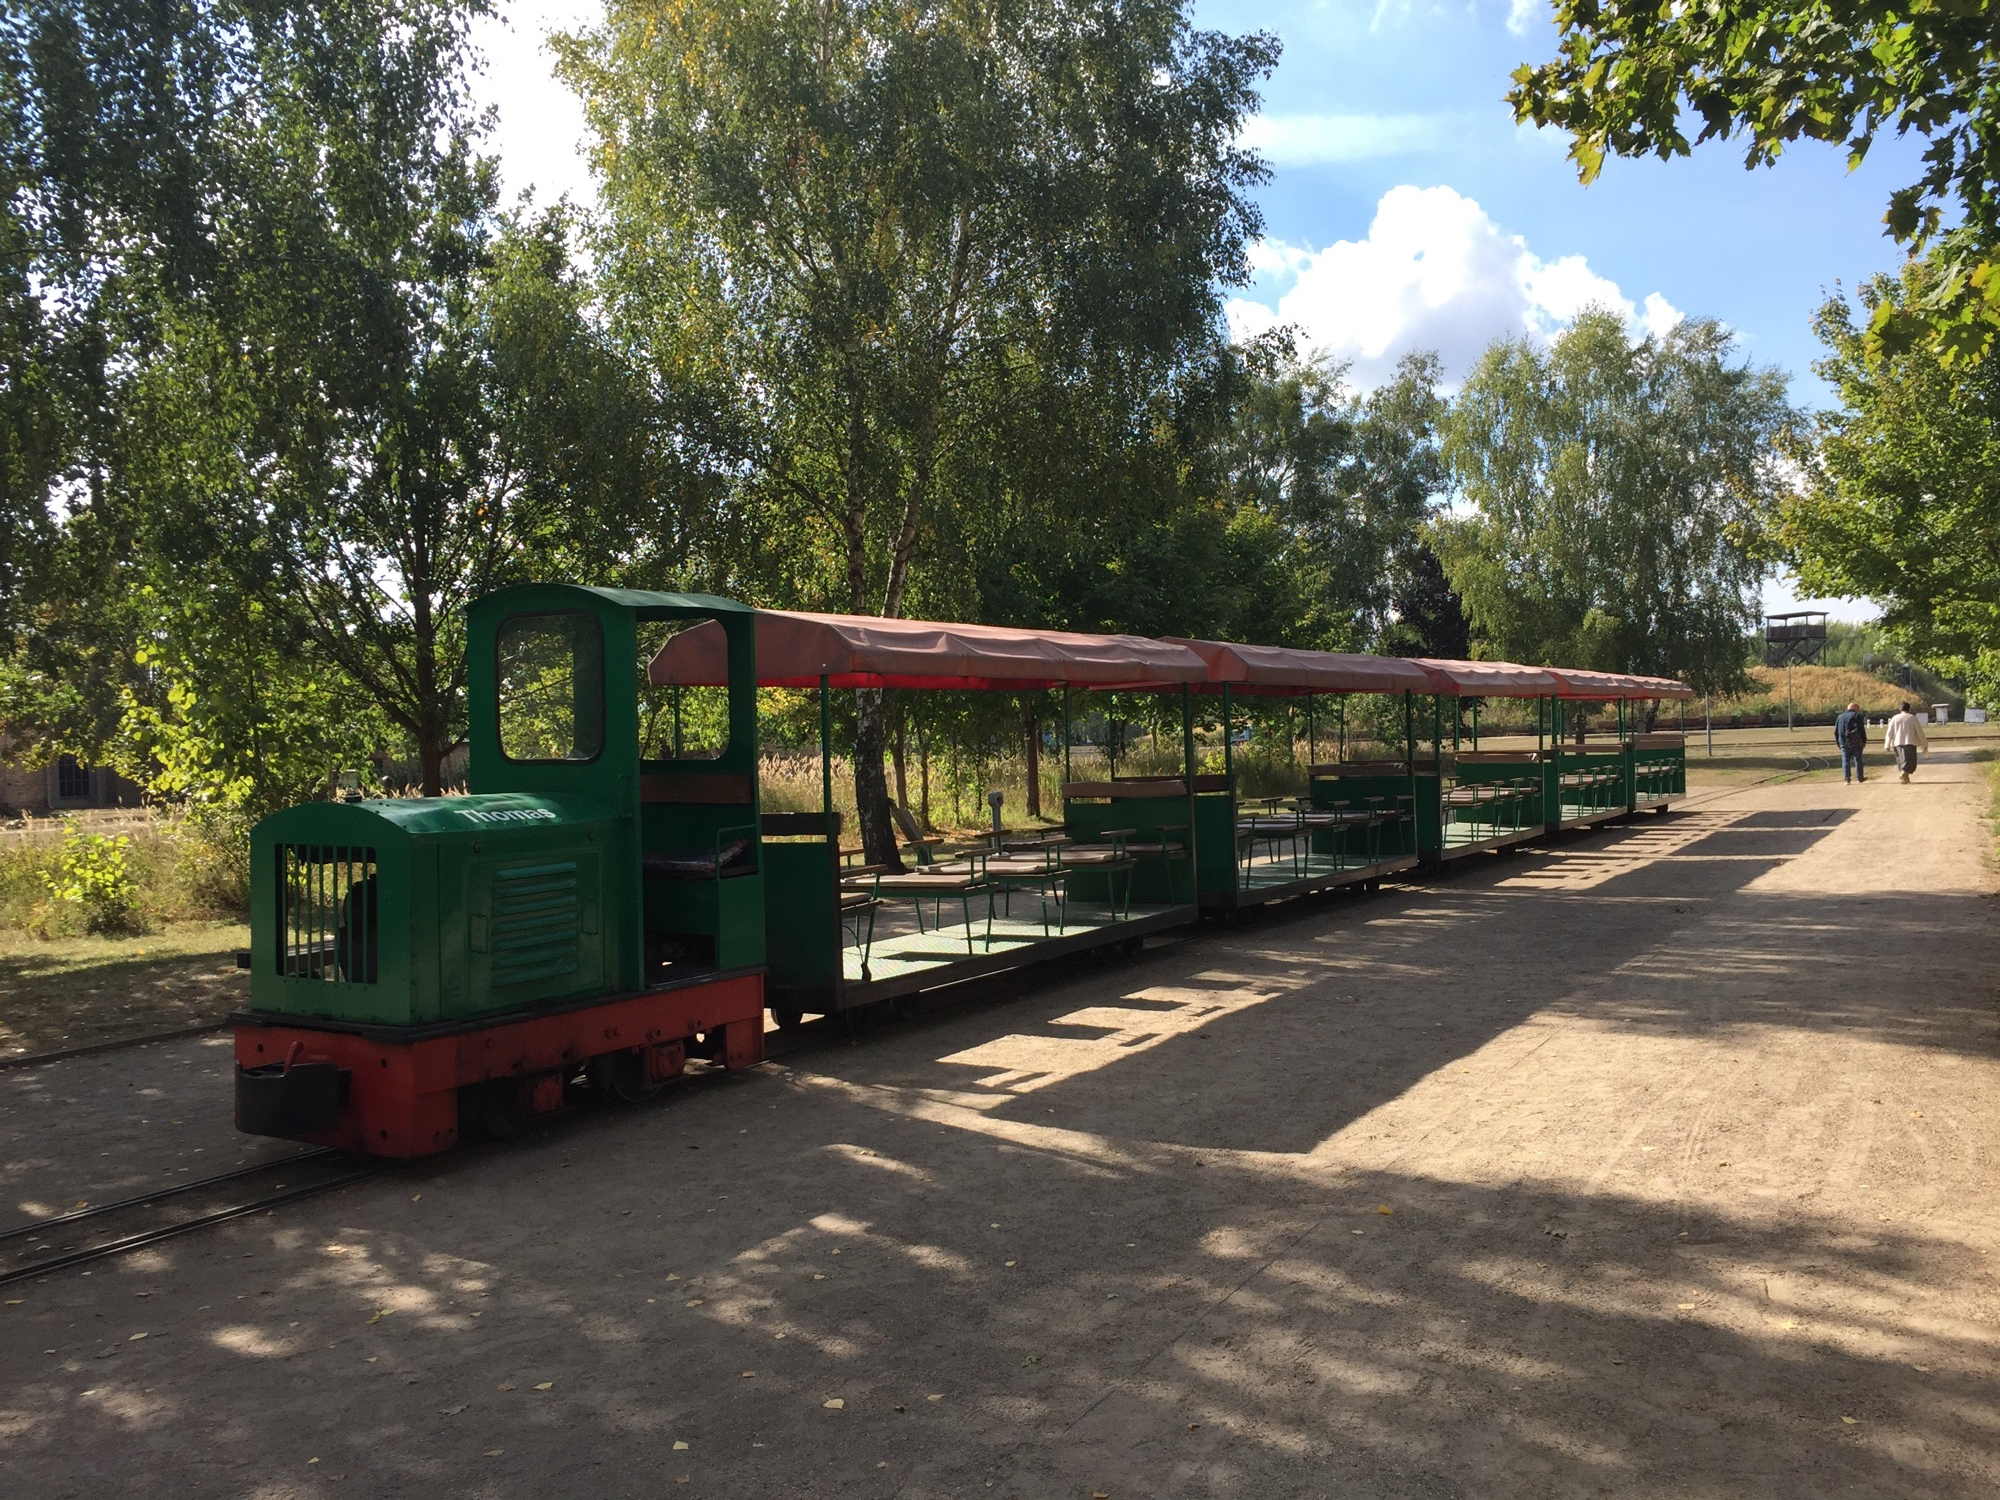 von der grünen Lok Thomas werden im Sommer 2018 die Besucher des Ziegeleiparks durch den Park transportiert